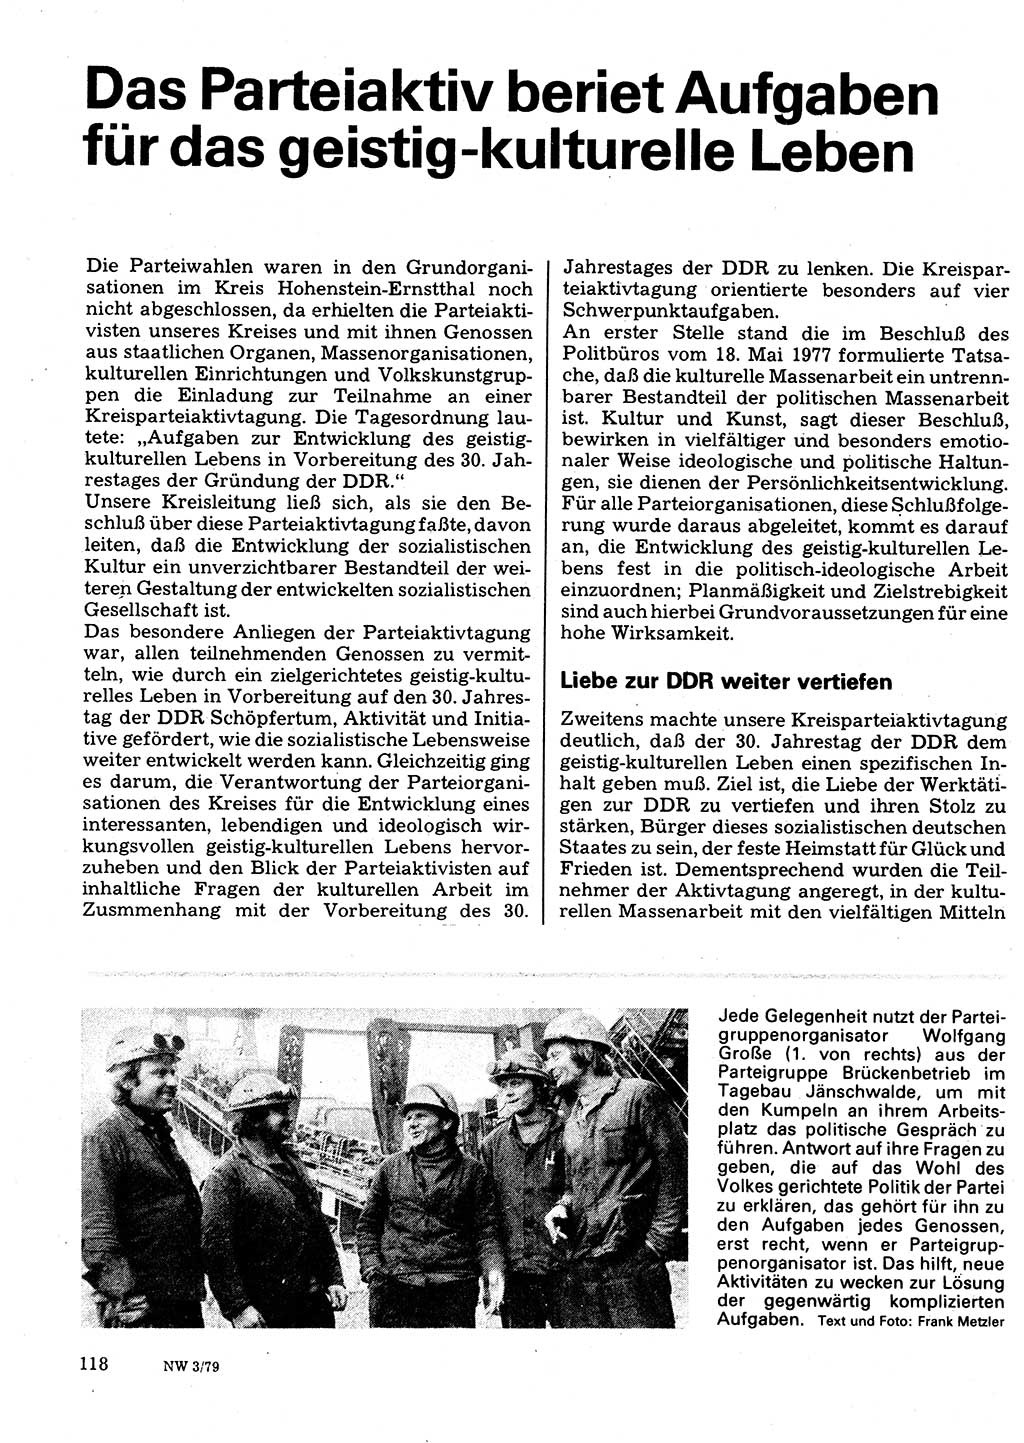 Neuer Weg (NW), Organ des Zentralkomitees (ZK) der SED (Sozialistische Einheitspartei Deutschlands) für Fragen des Parteilebens, 34. Jahrgang [Deutsche Demokratische Republik (DDR)] 1979, Seite 118 (NW ZK SED DDR 1979, S. 118)